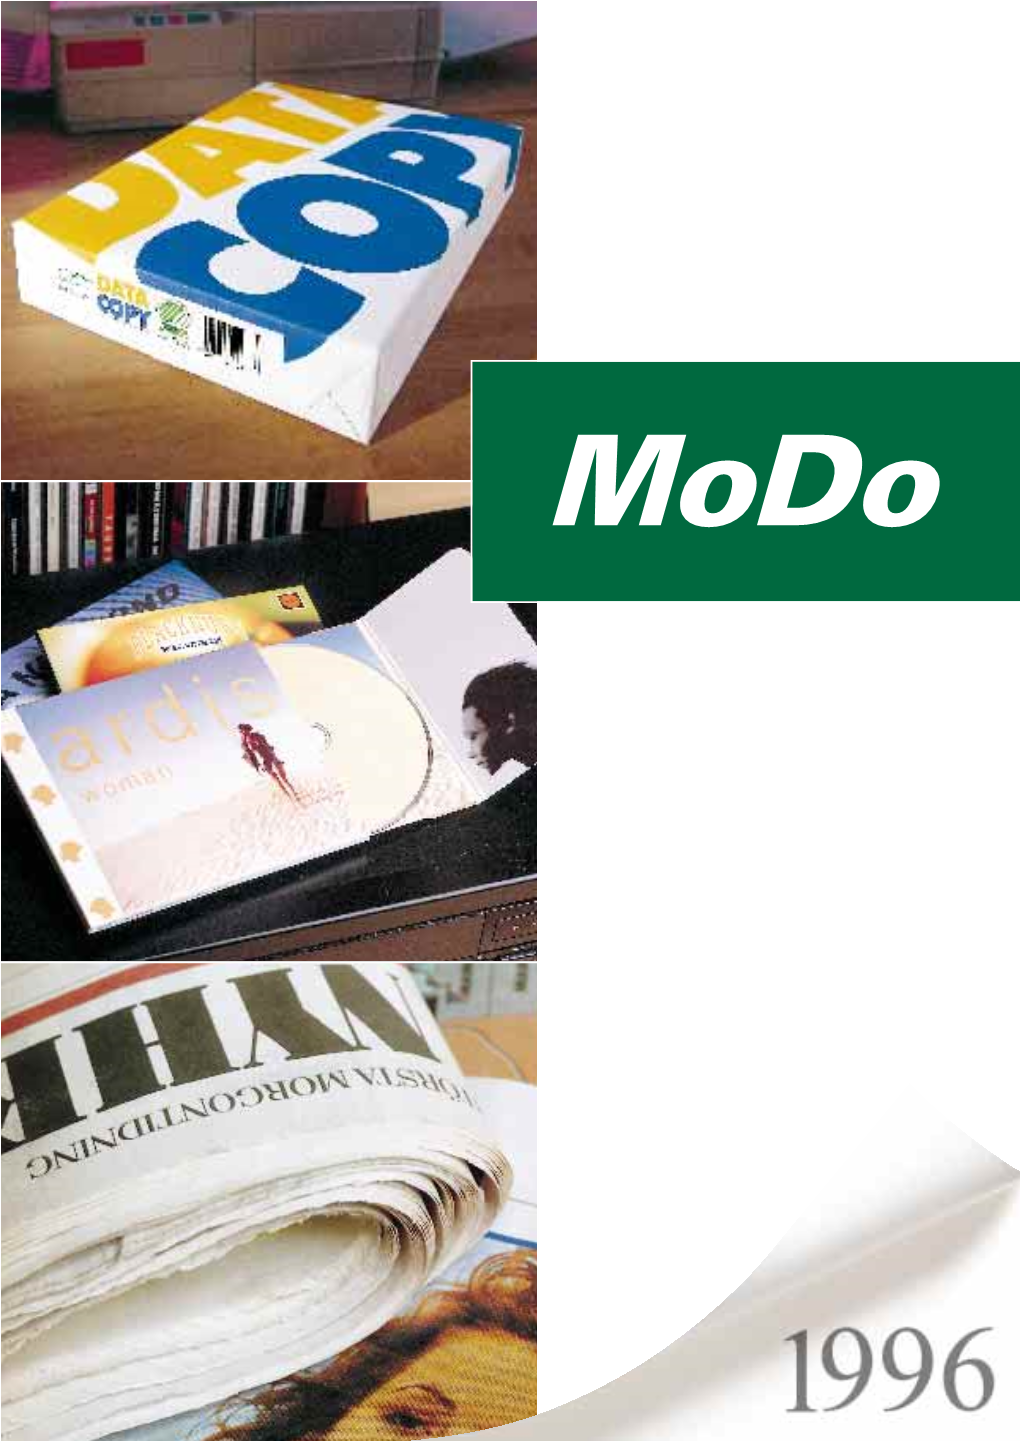 Modo Annual Report 1996